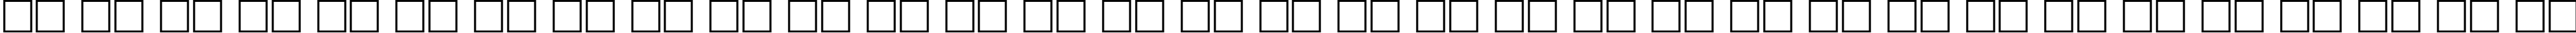 Пример написания русского алфавита шрифтом PentaLight